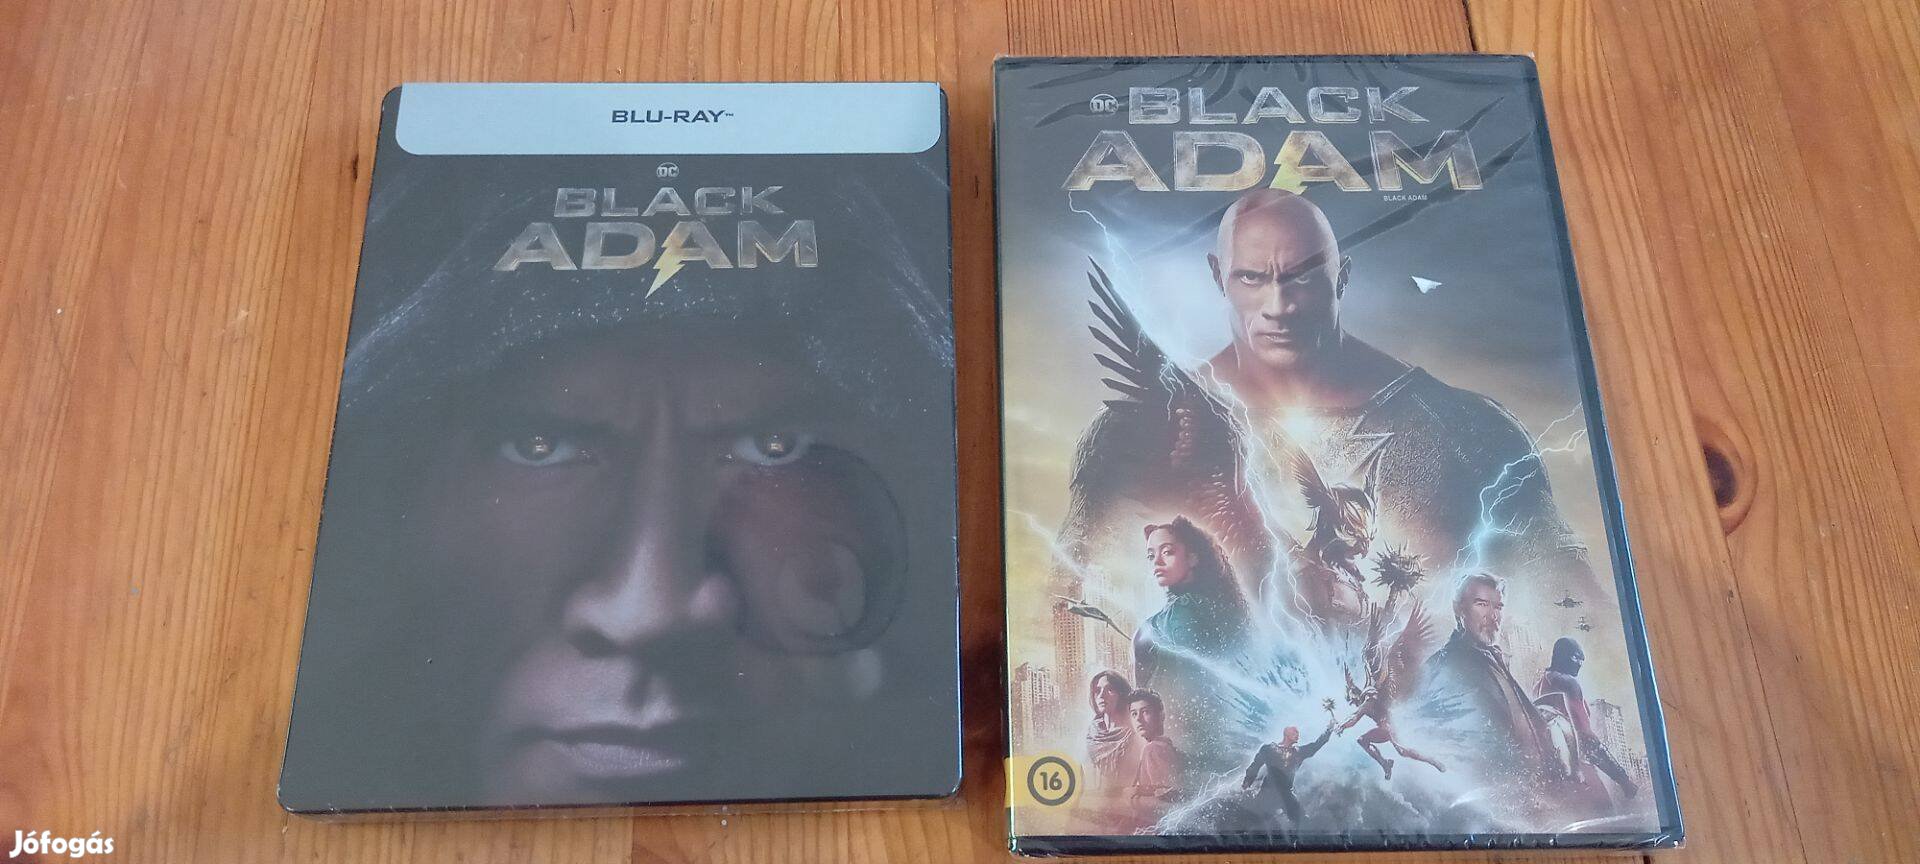 DC Black Adam DVD film